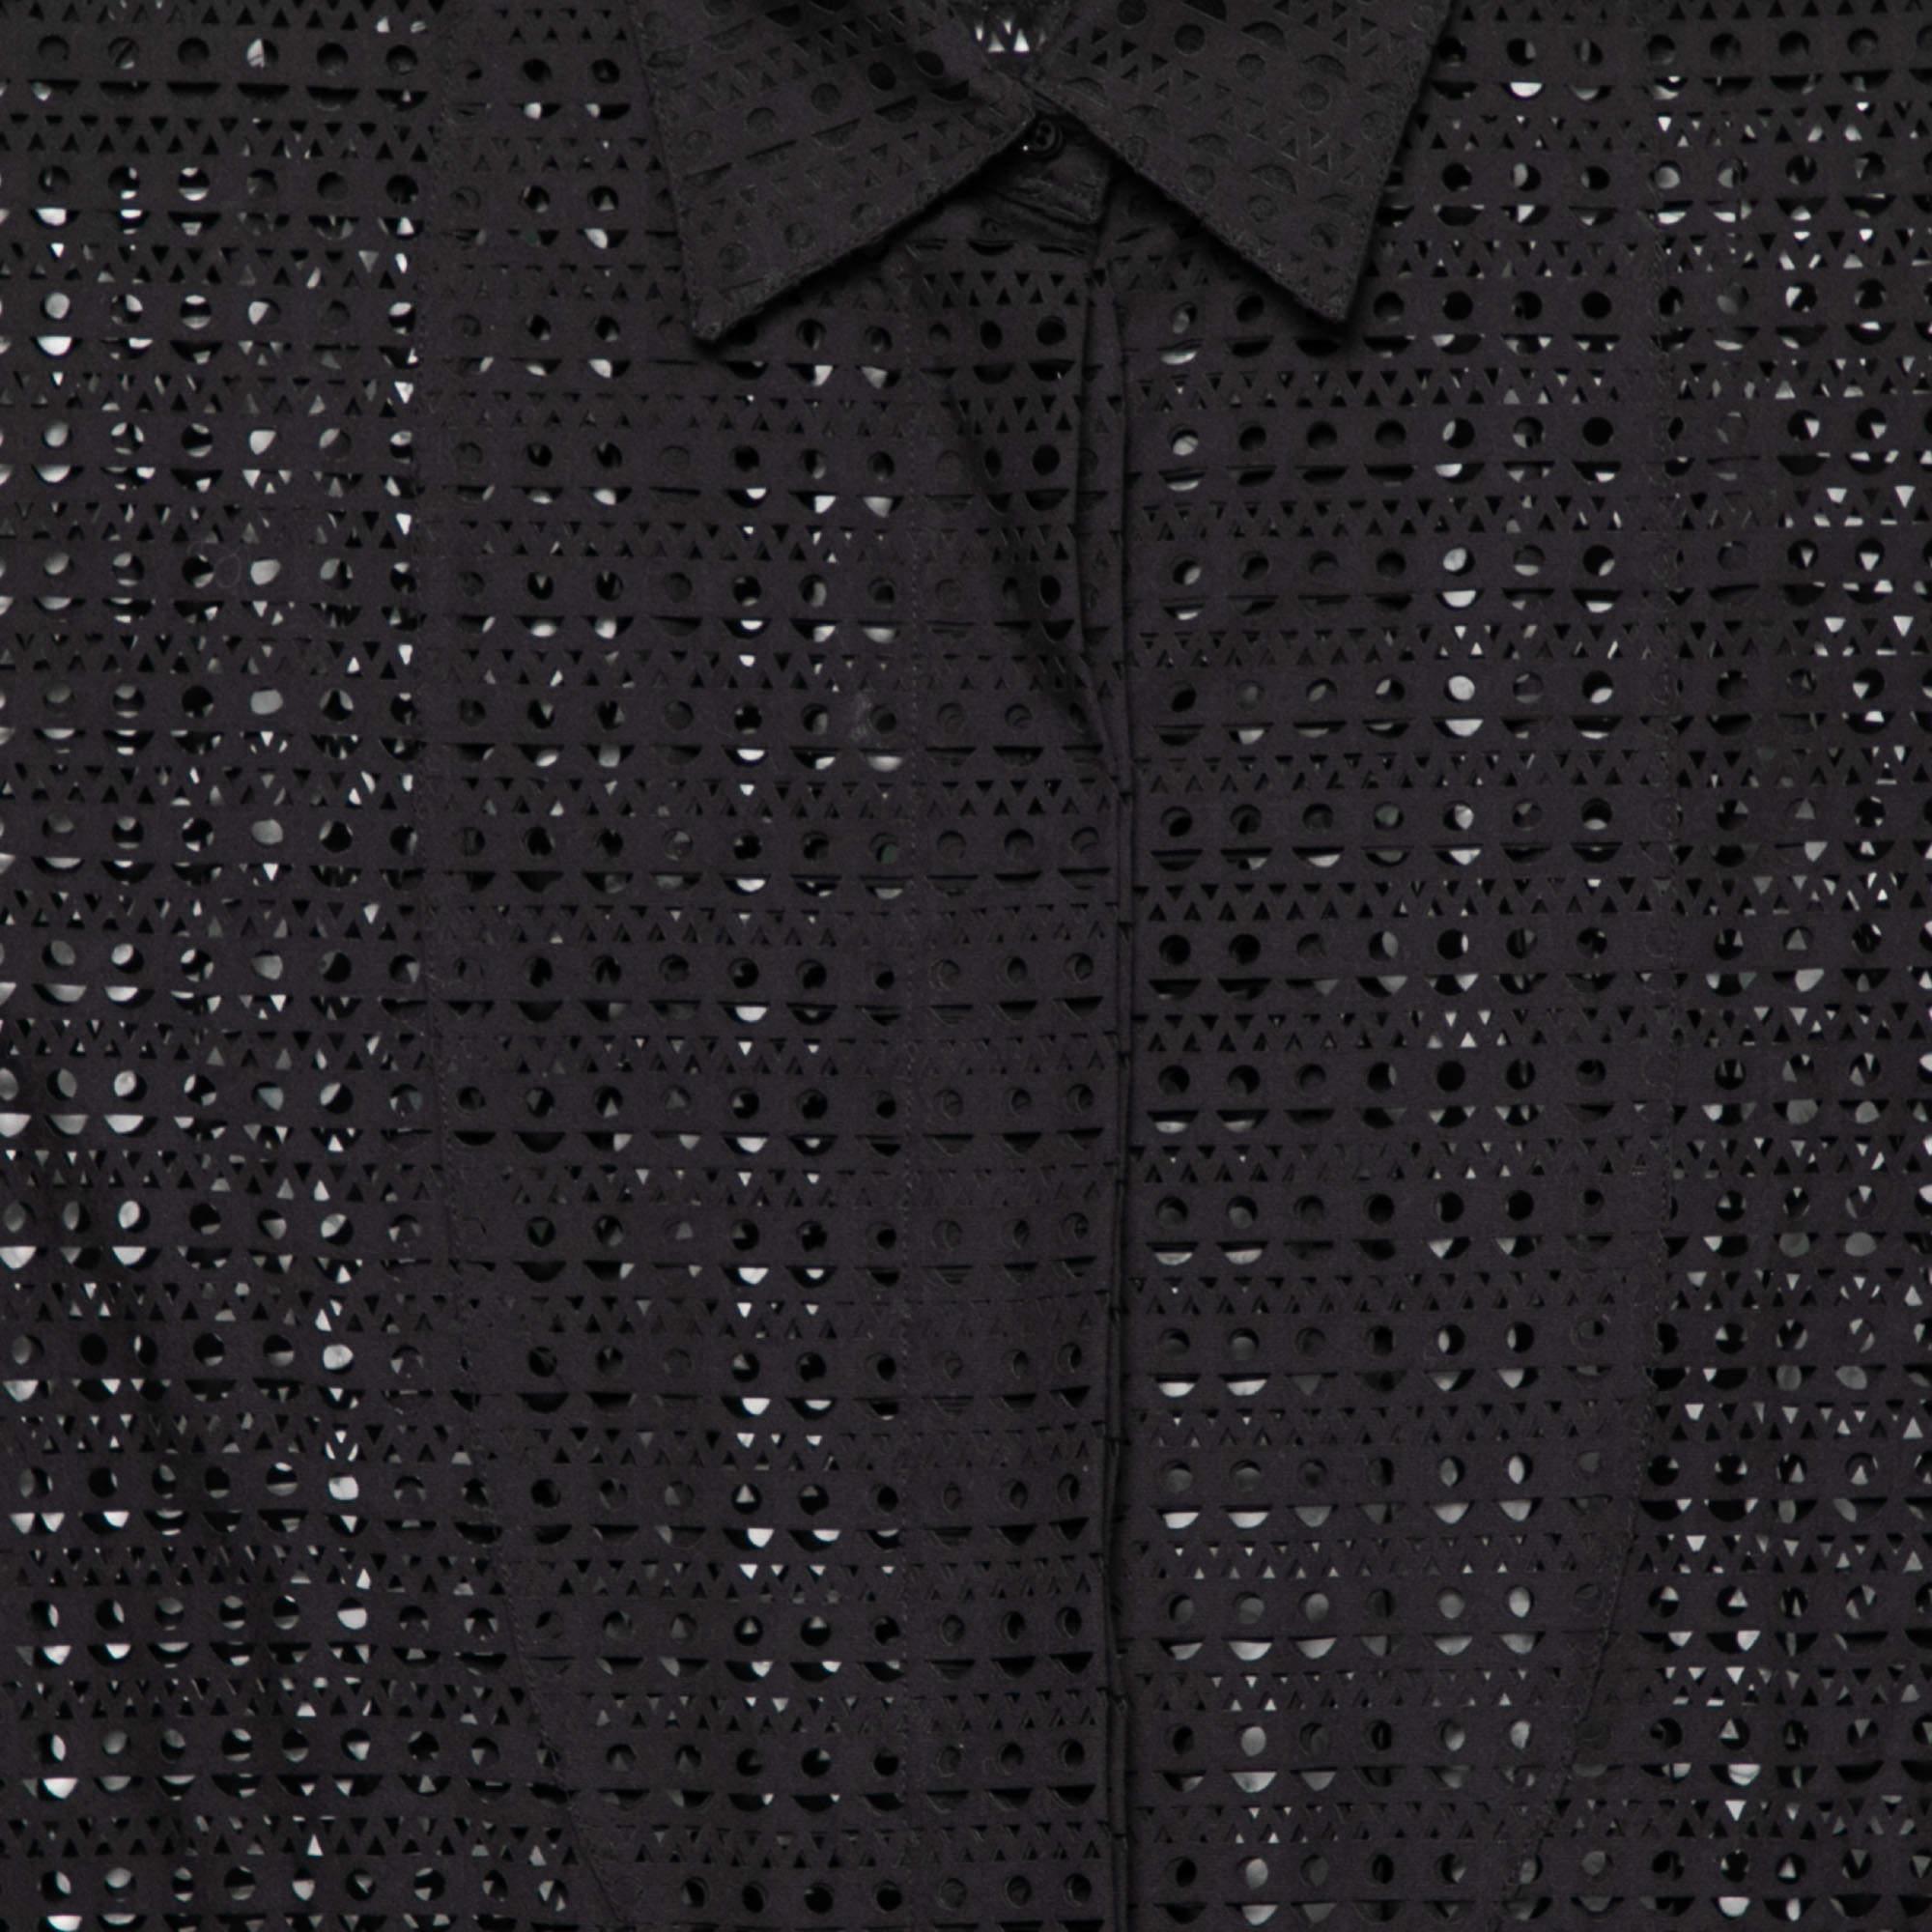 Alaia Black Patterned Laser Cut Cotton Shirt Dress M For Sale 1